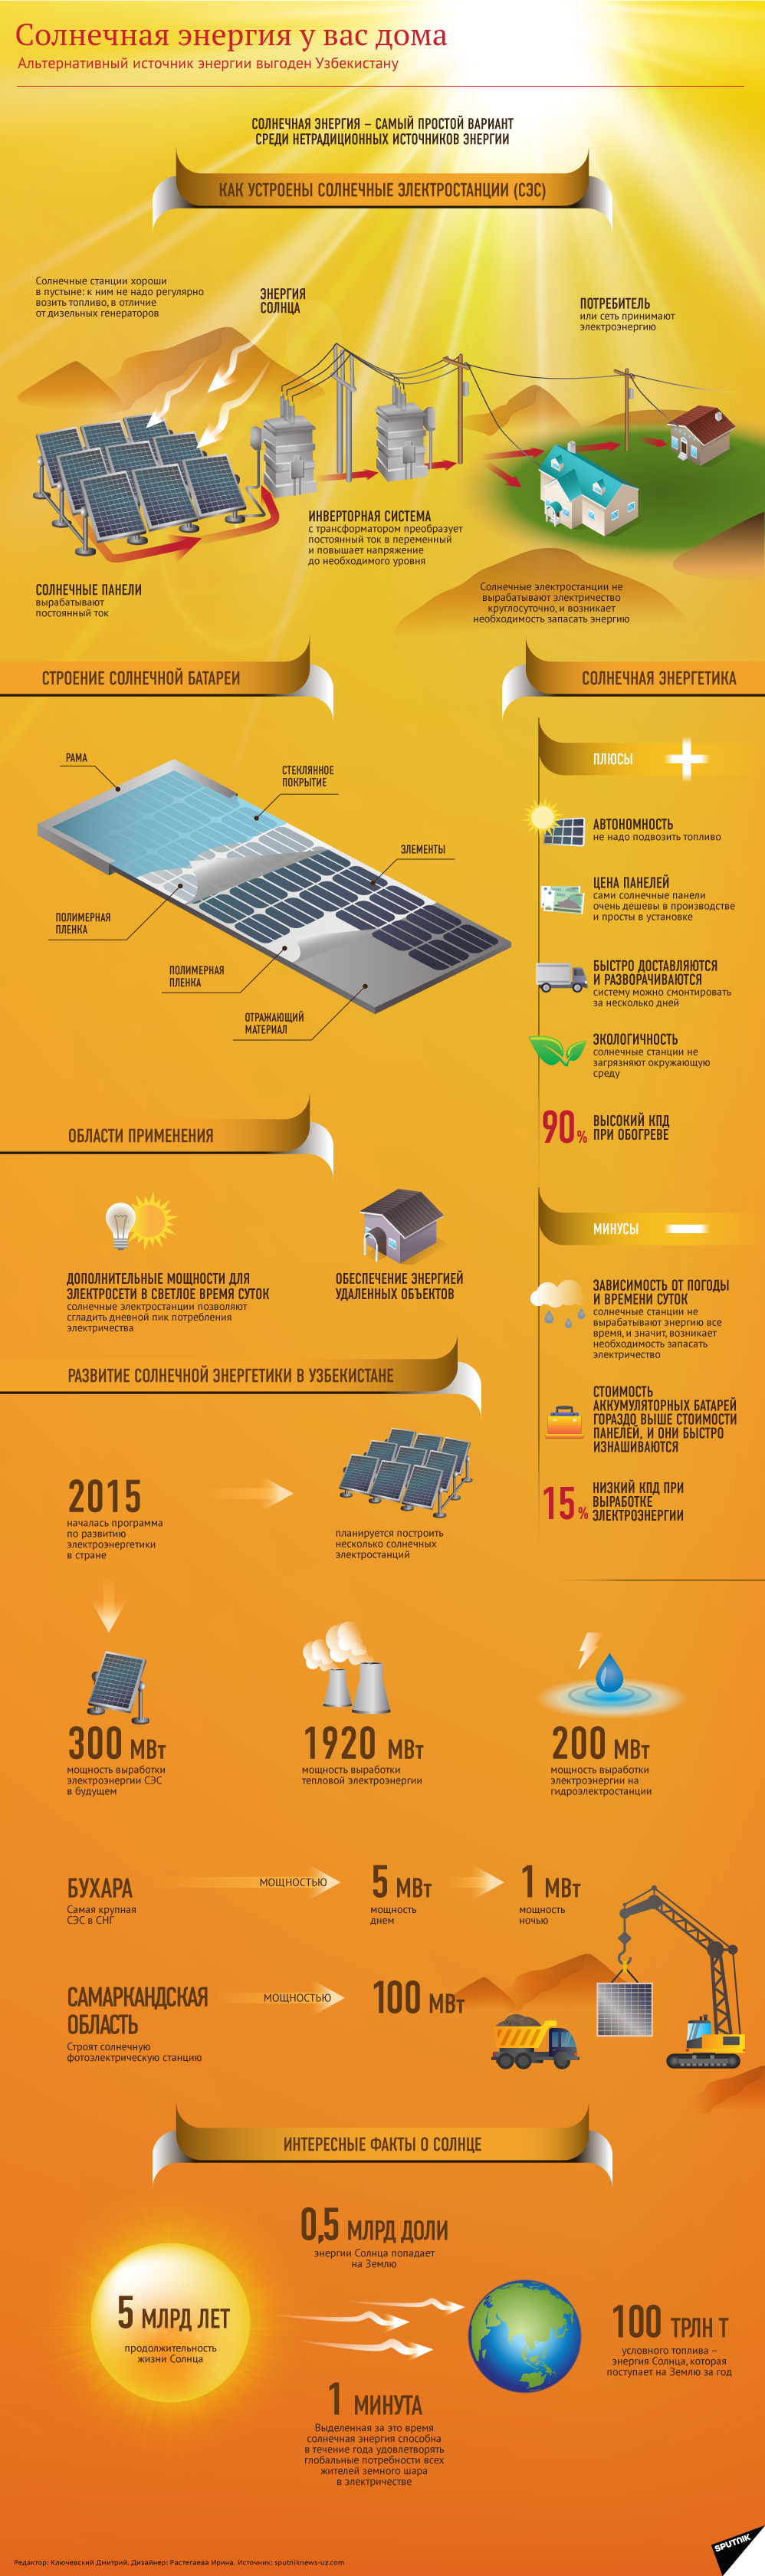 Солнечная энергетика в Узбекистане - Sputnik Узбекистан